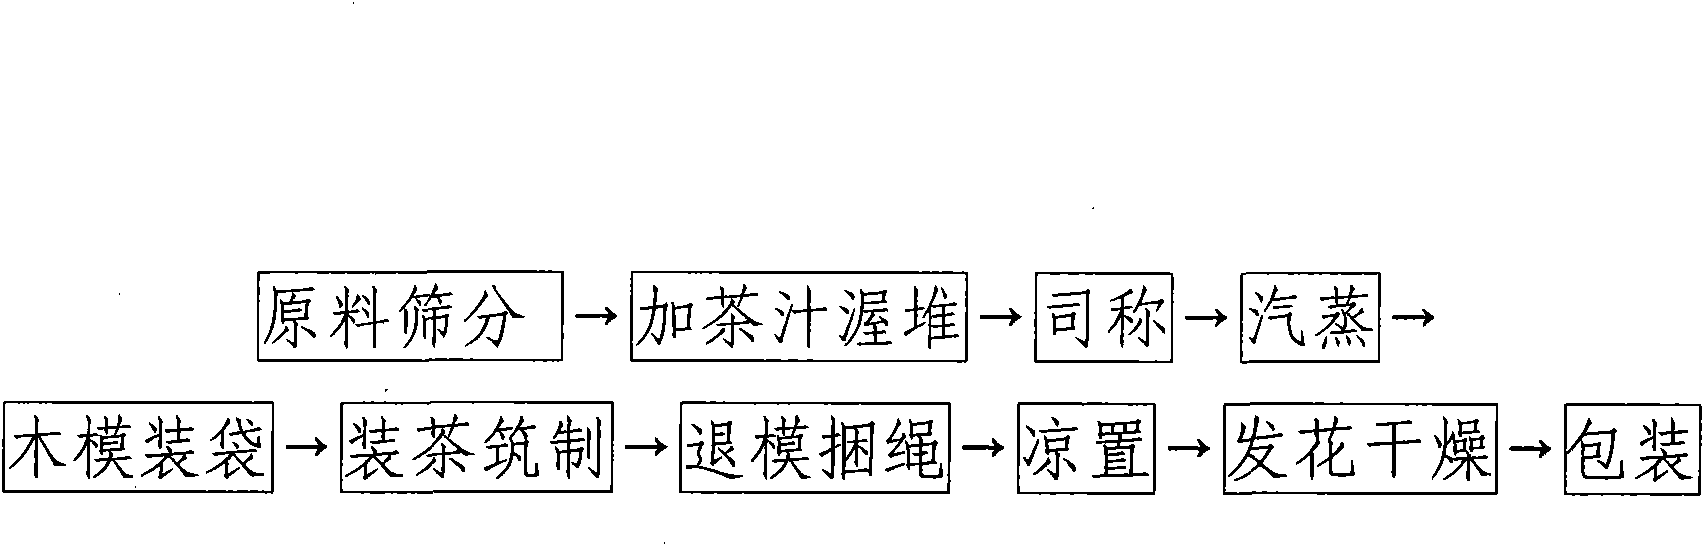 Method for manufacturing Tianfu brick tea